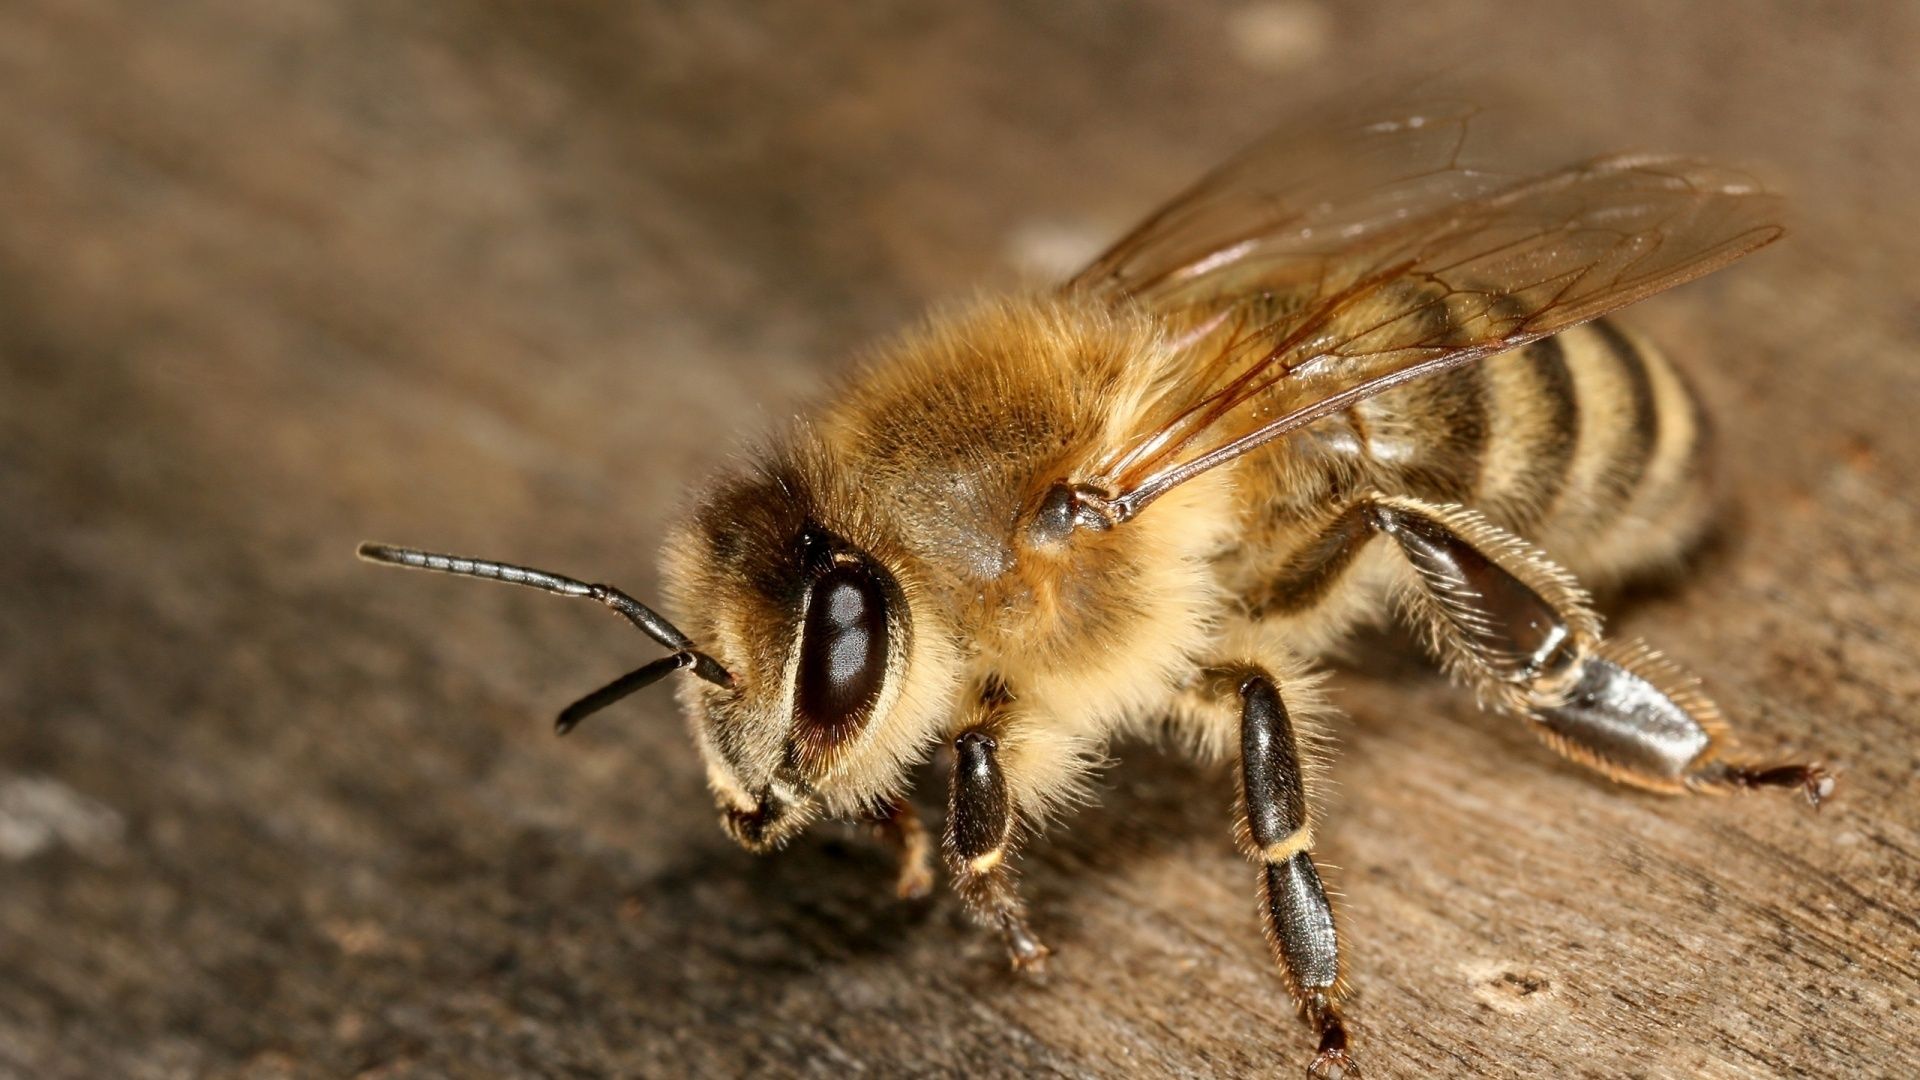 Bee wallpaper photo